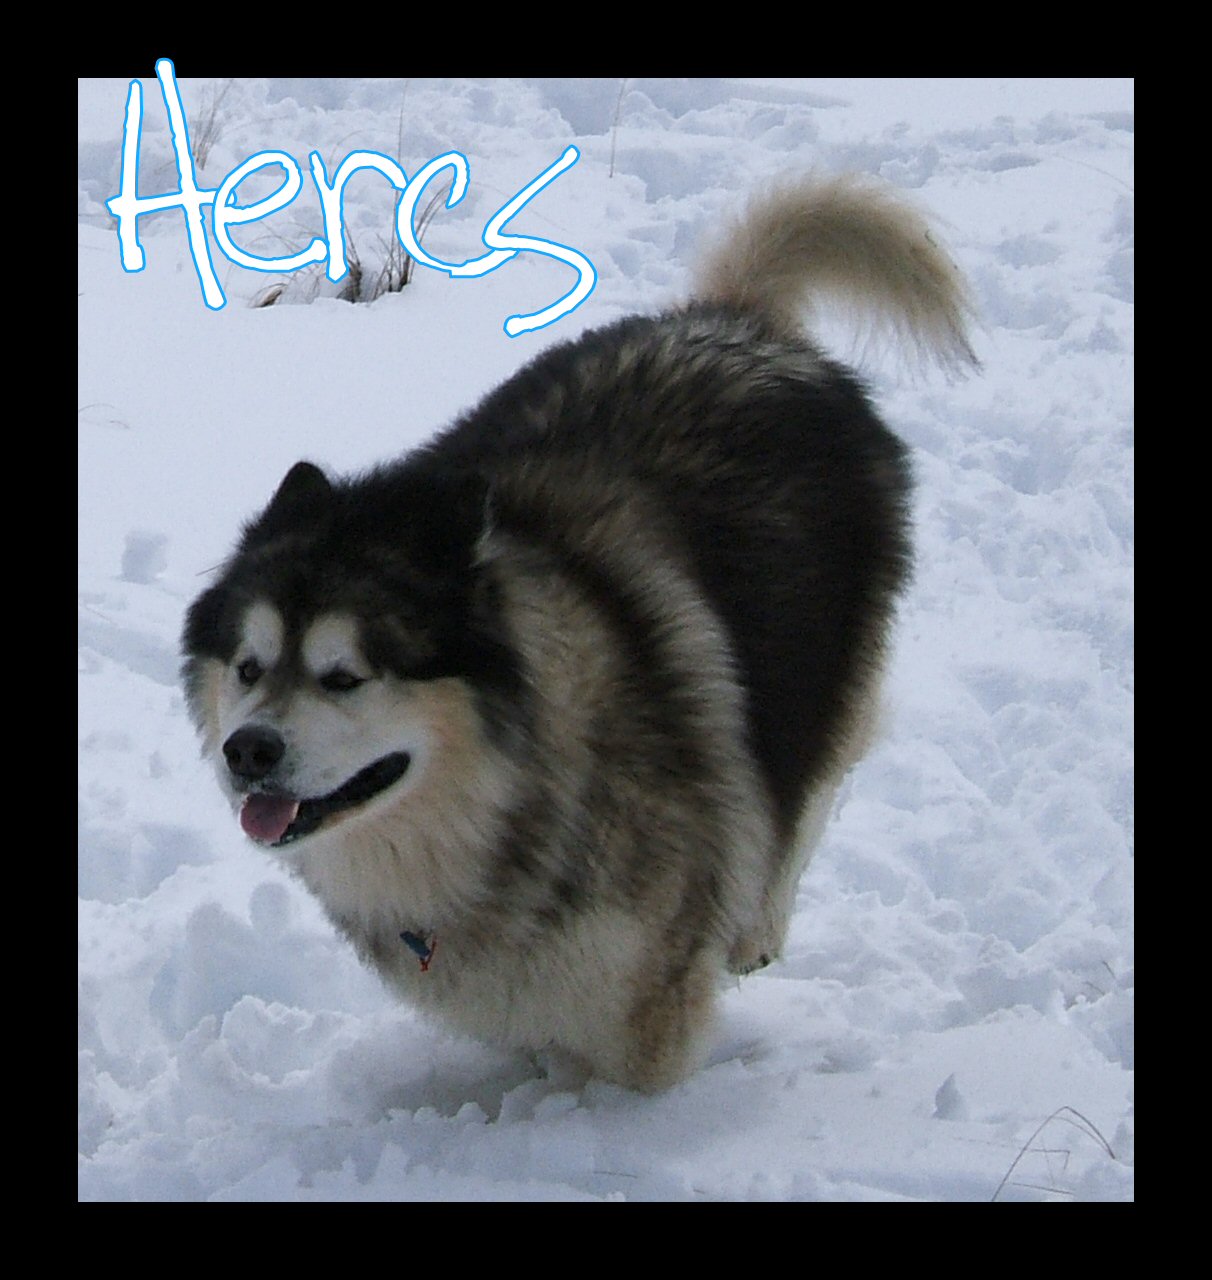 Hercules: Bounding thru snow